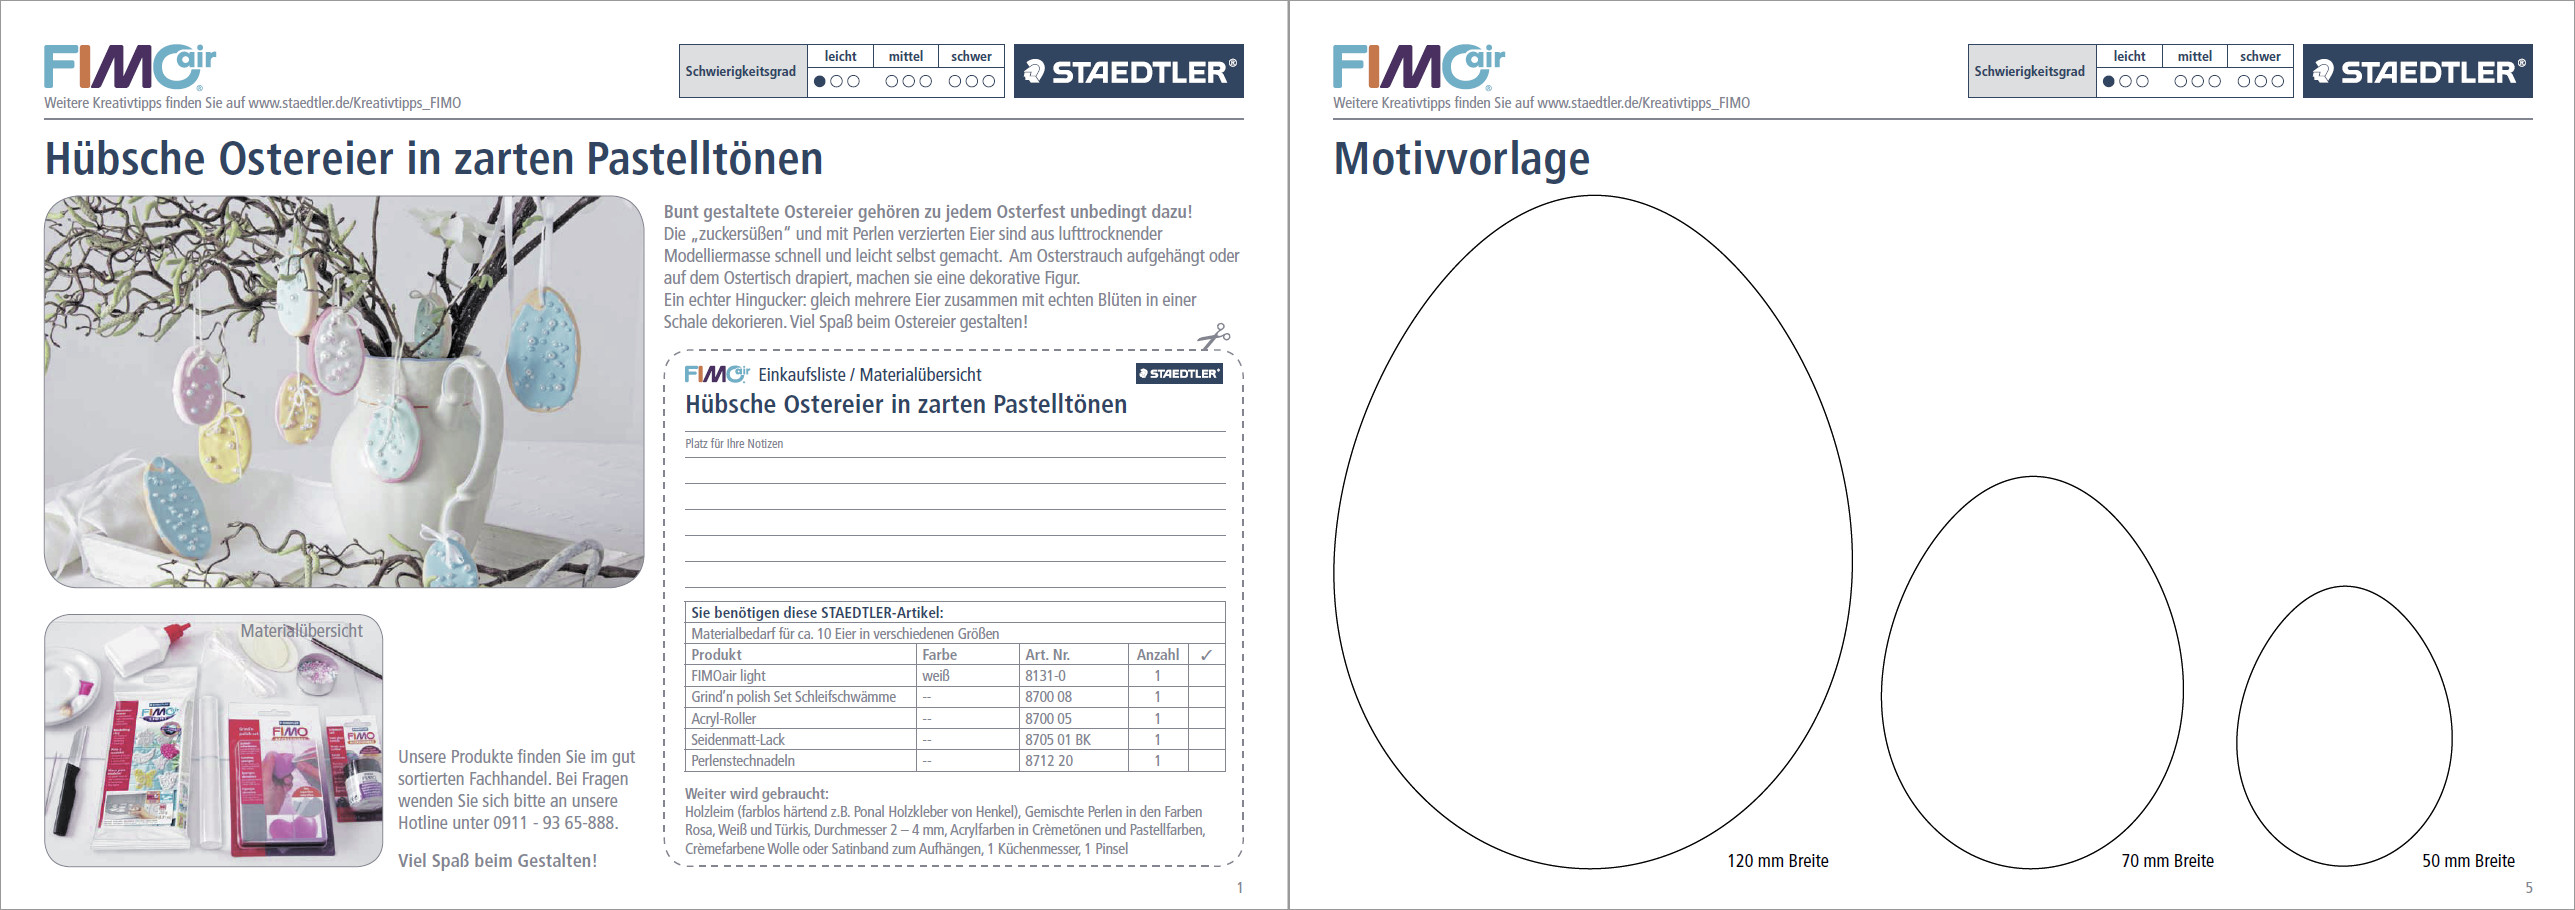 Komplette Anleitung mit Motivvorlage im PDF-Format